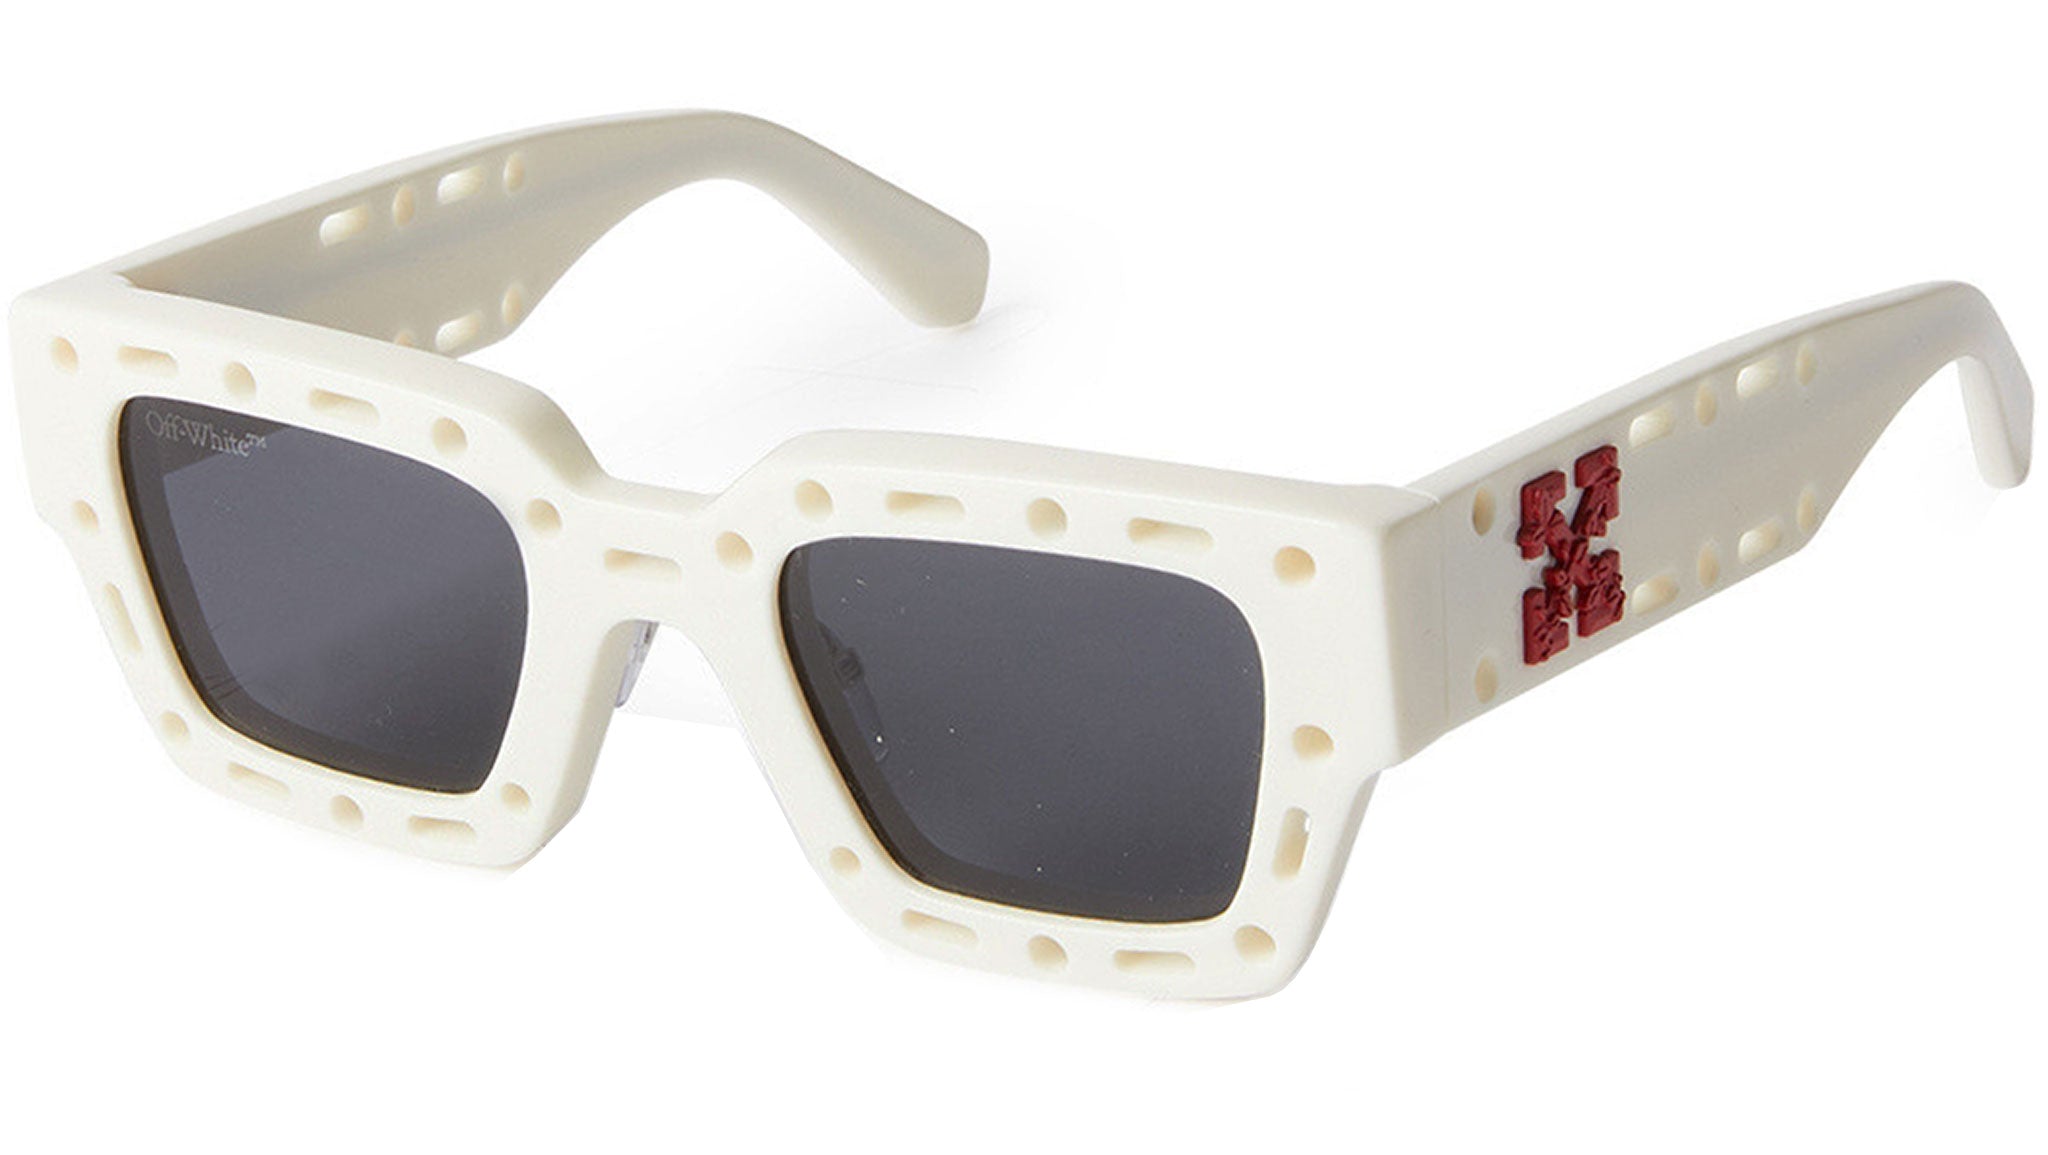 Off-White Mercer Rectangular Sunglasses